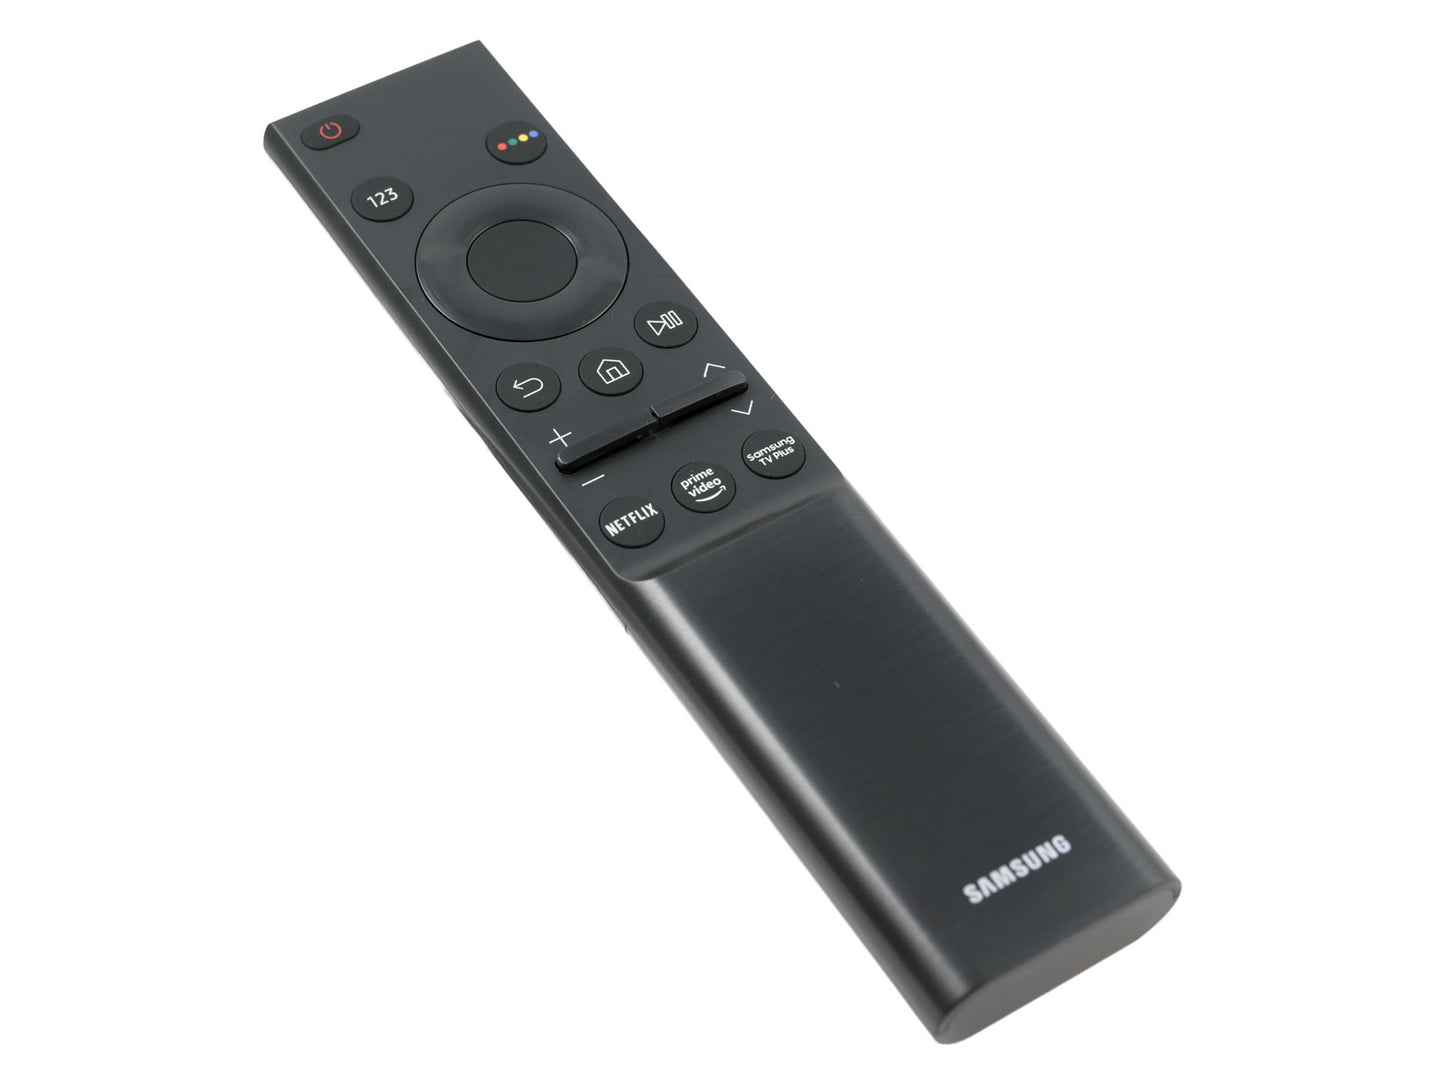 SAMSUNG BN59-01358B, BN5901358B Mando a distancia original para TV Samsung UHD series GU & UE - Bild 3